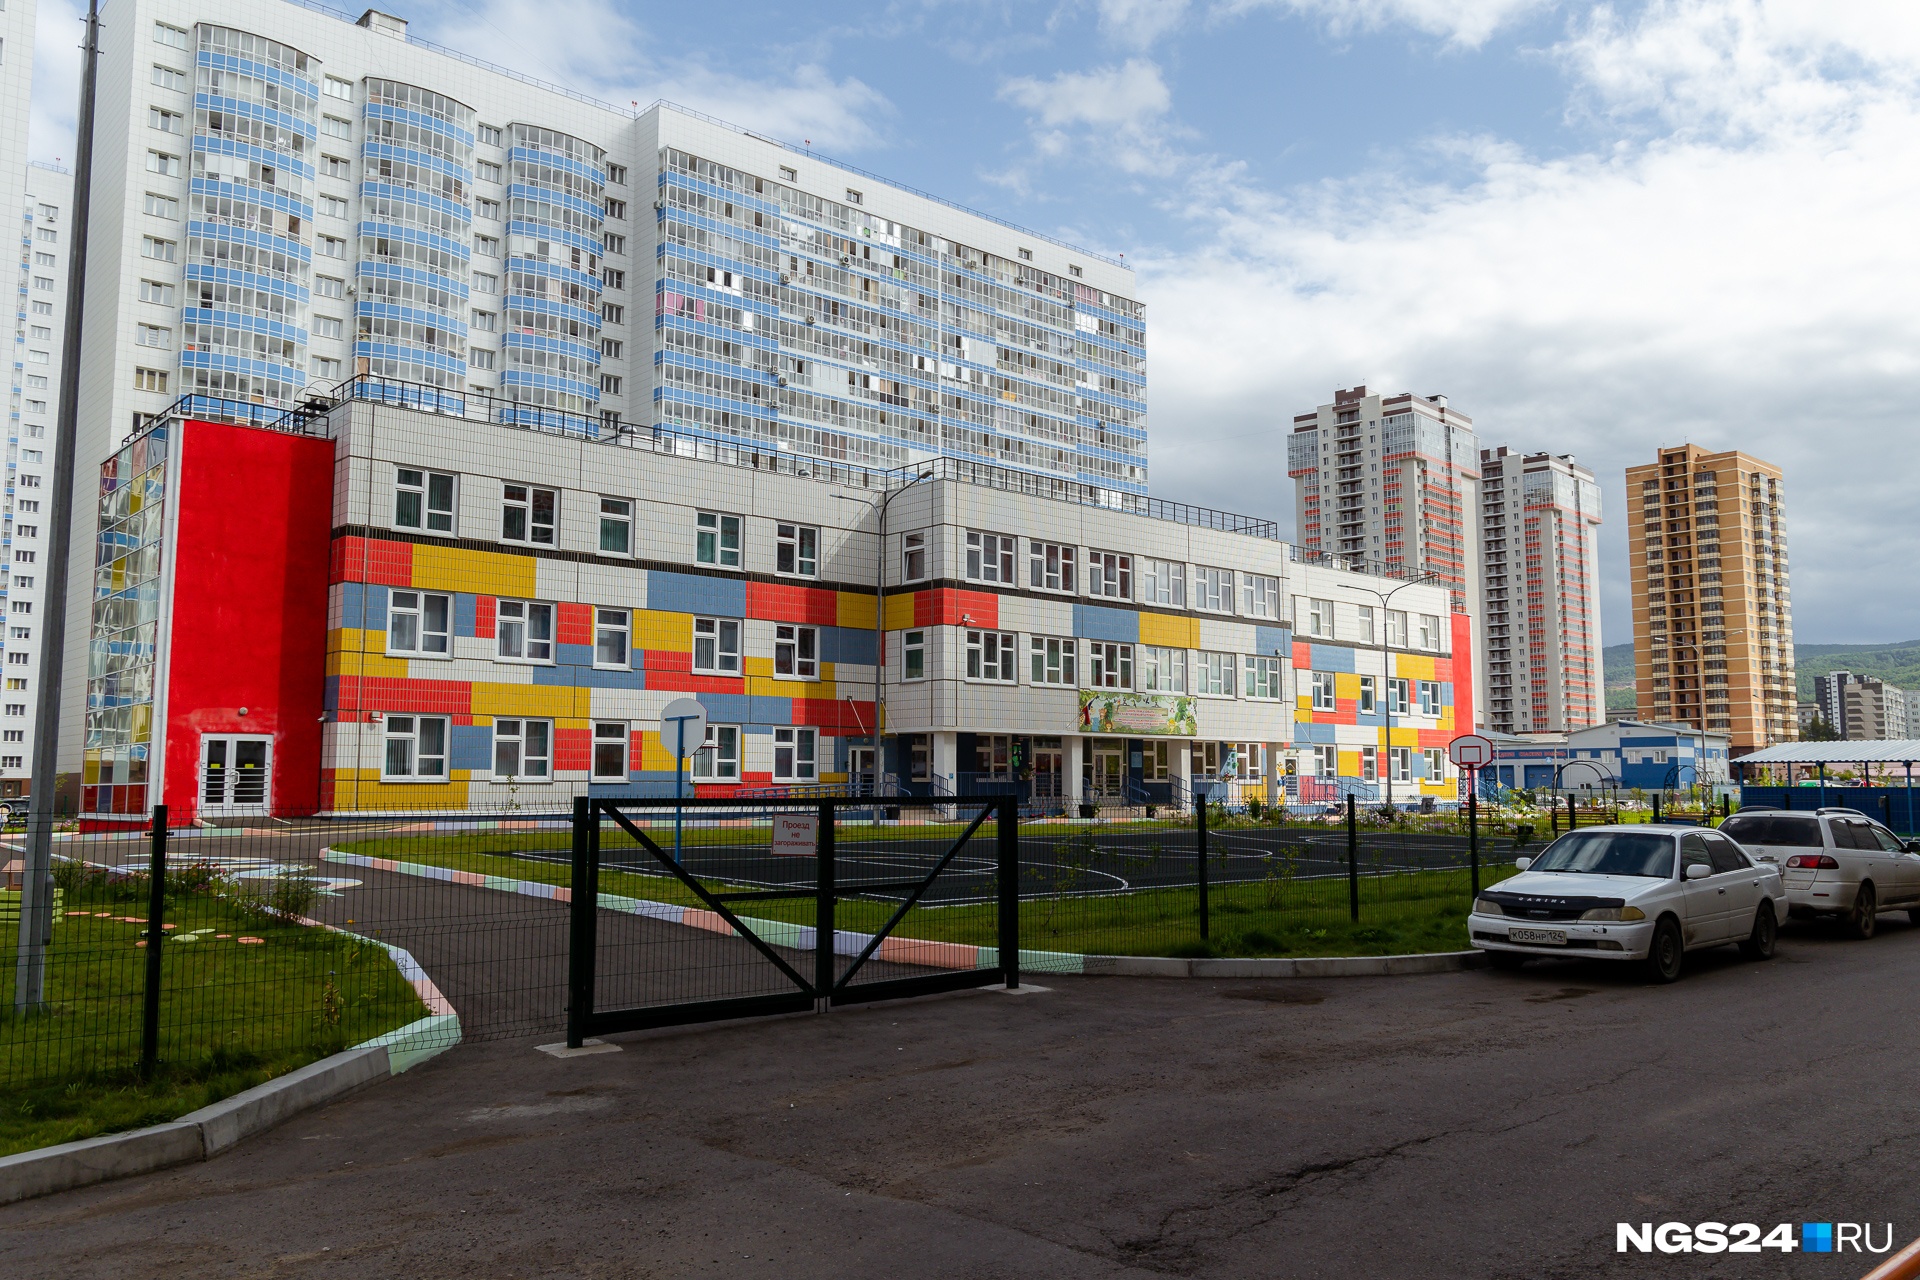 Увидеть детский садик во дворе дома — для Красноярска это стало обычным явлением